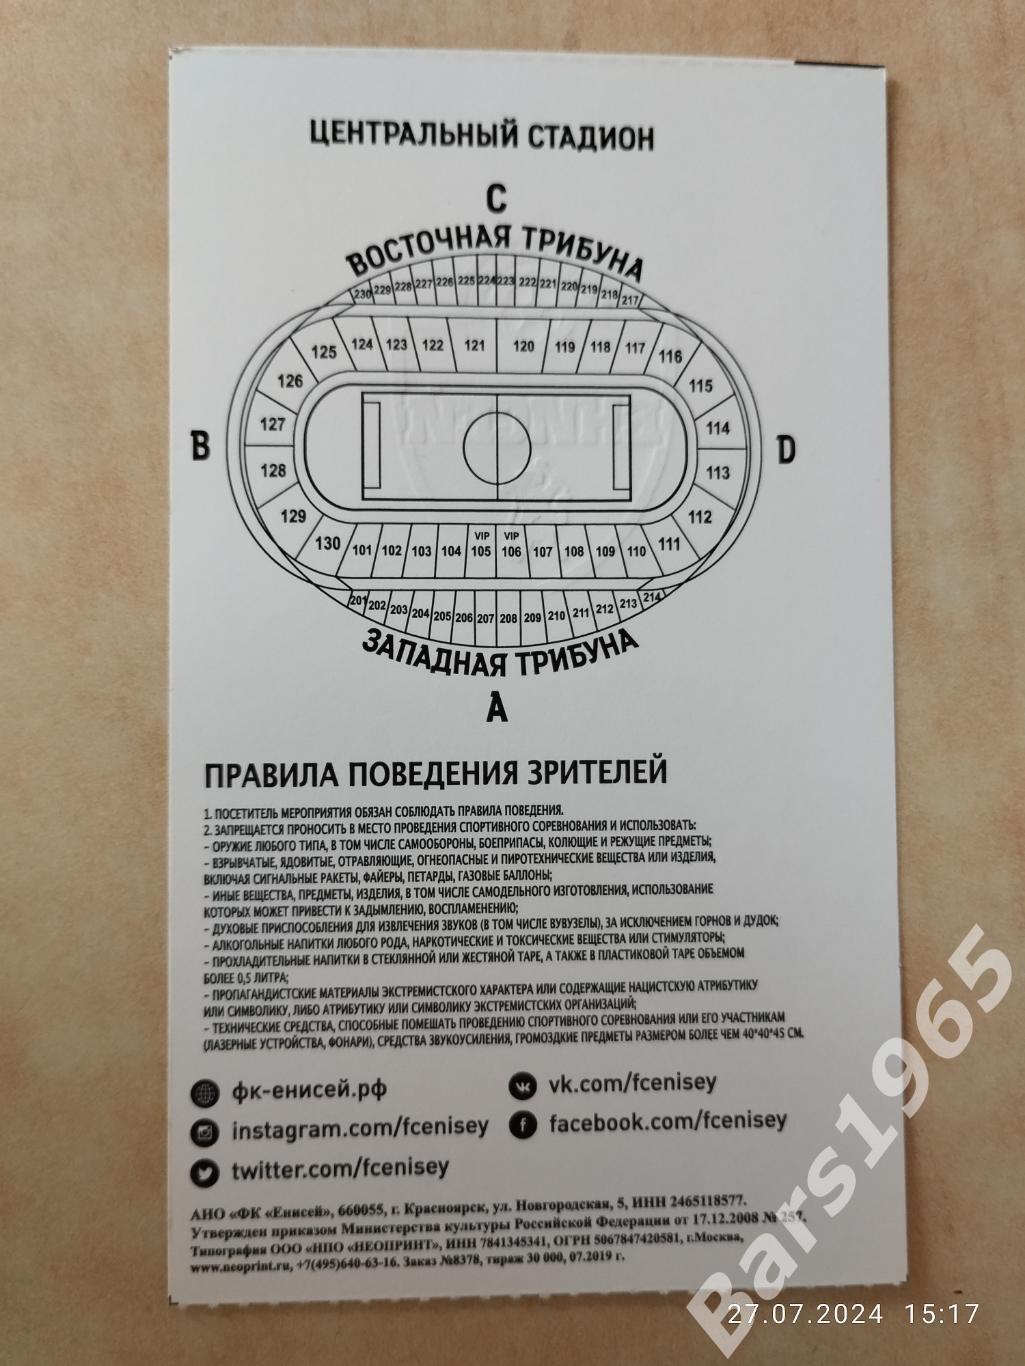 Енисей Красноярск - Ротор Волгоград 2019 Билет 1